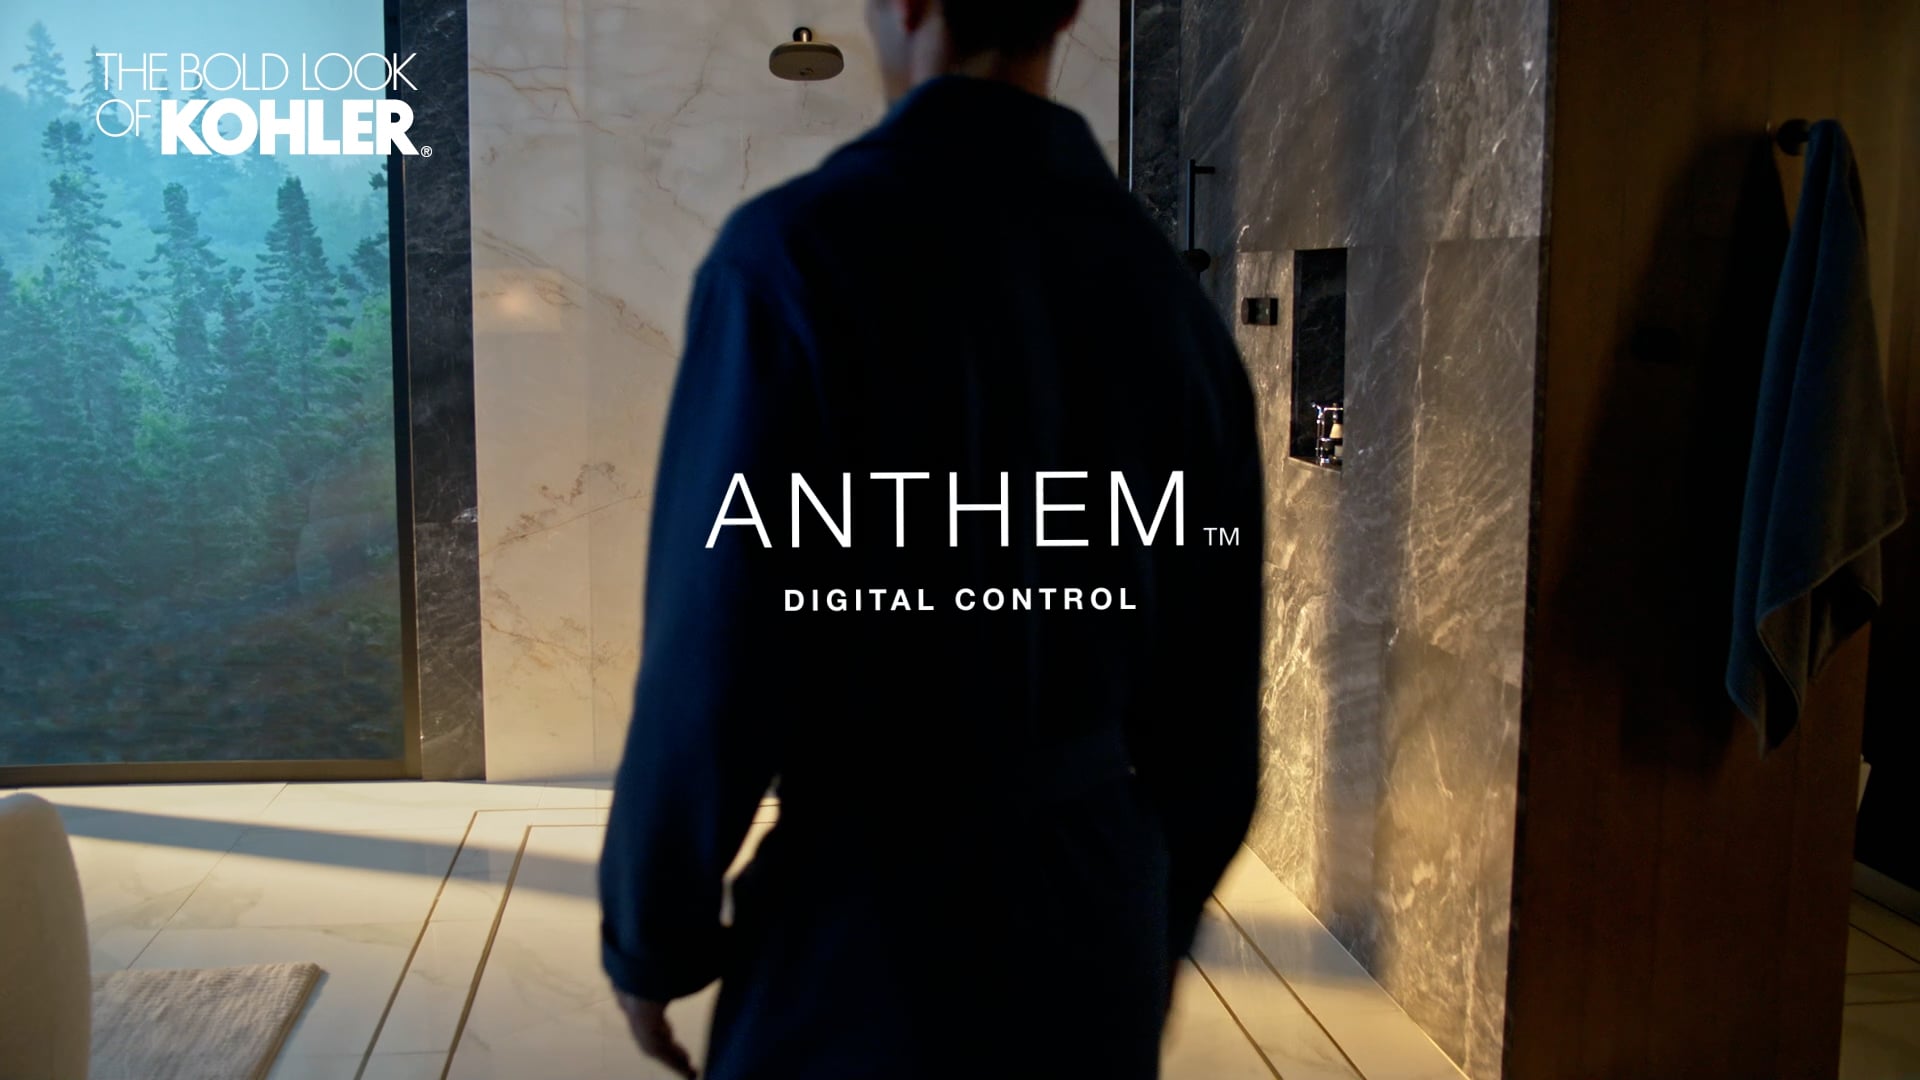 Kohler | Anthem